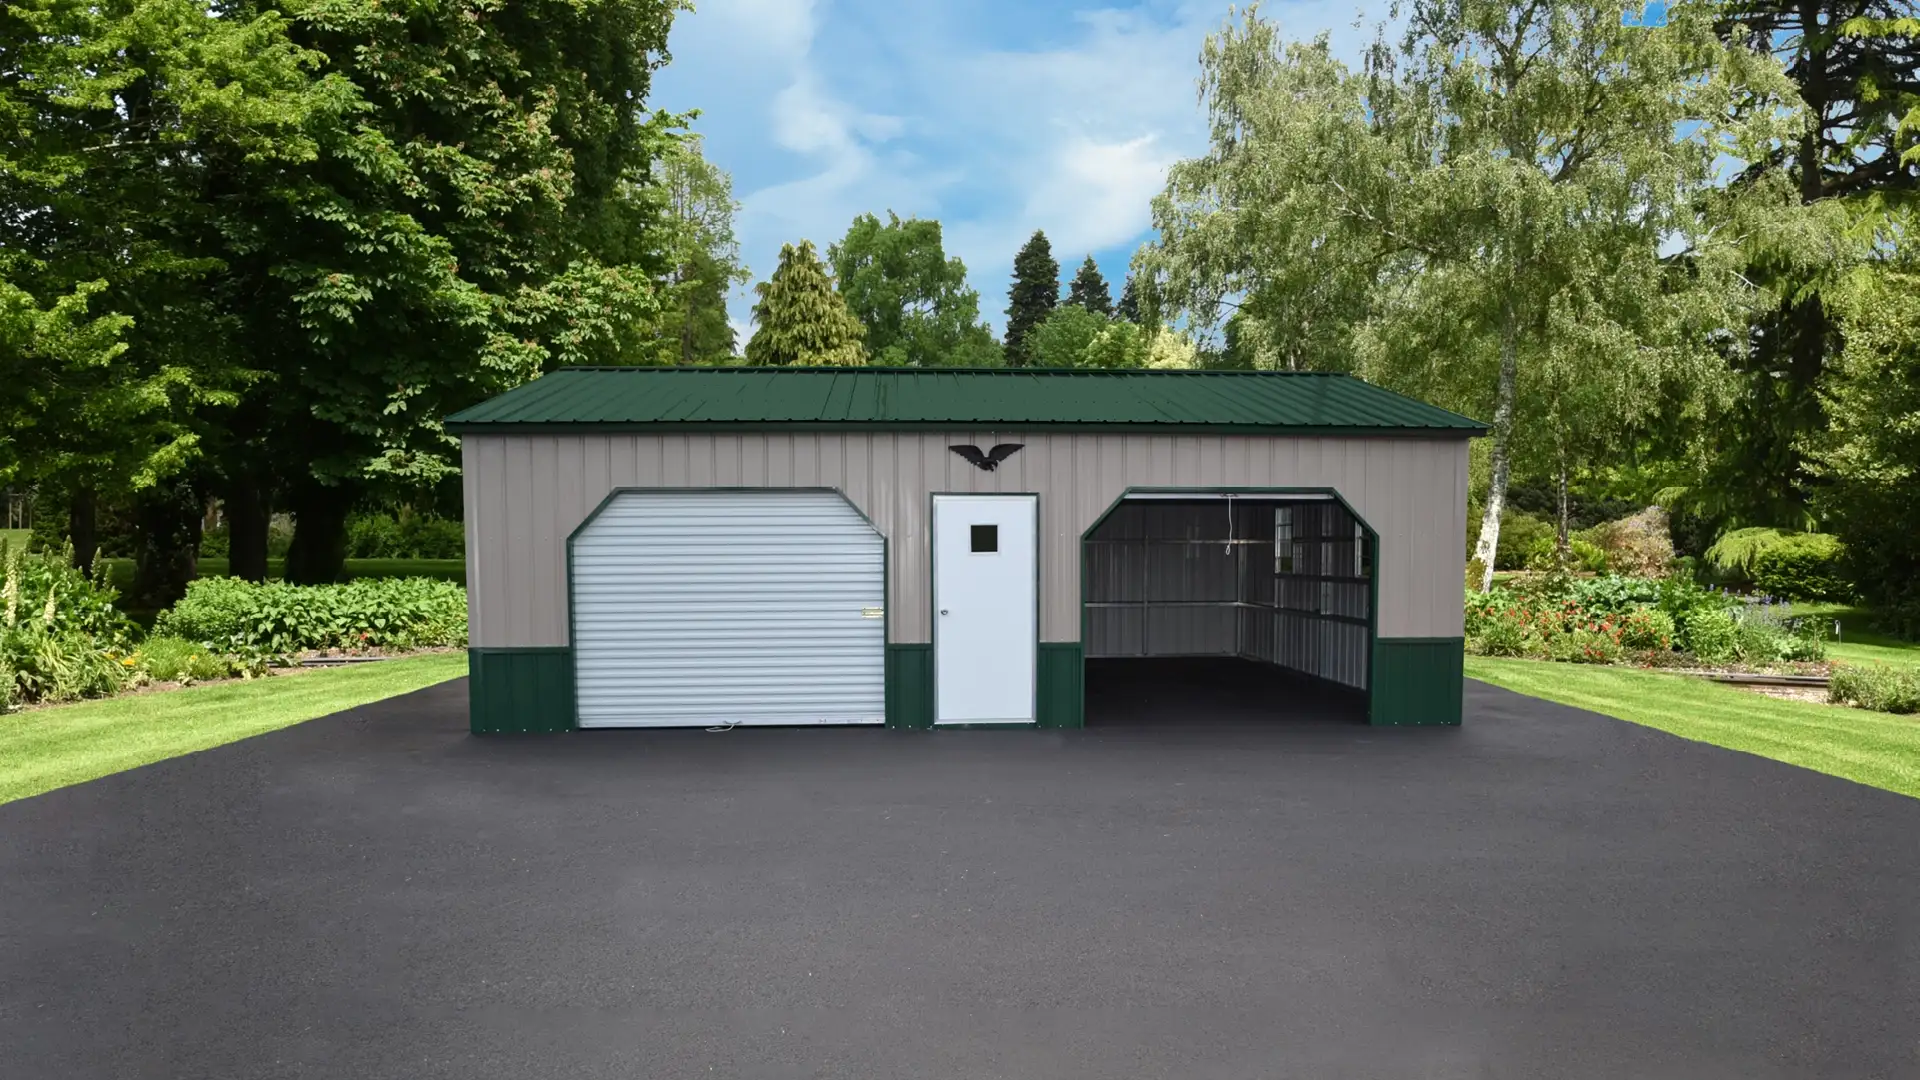 A green metal garage with two garage doors. One of the doors is open.